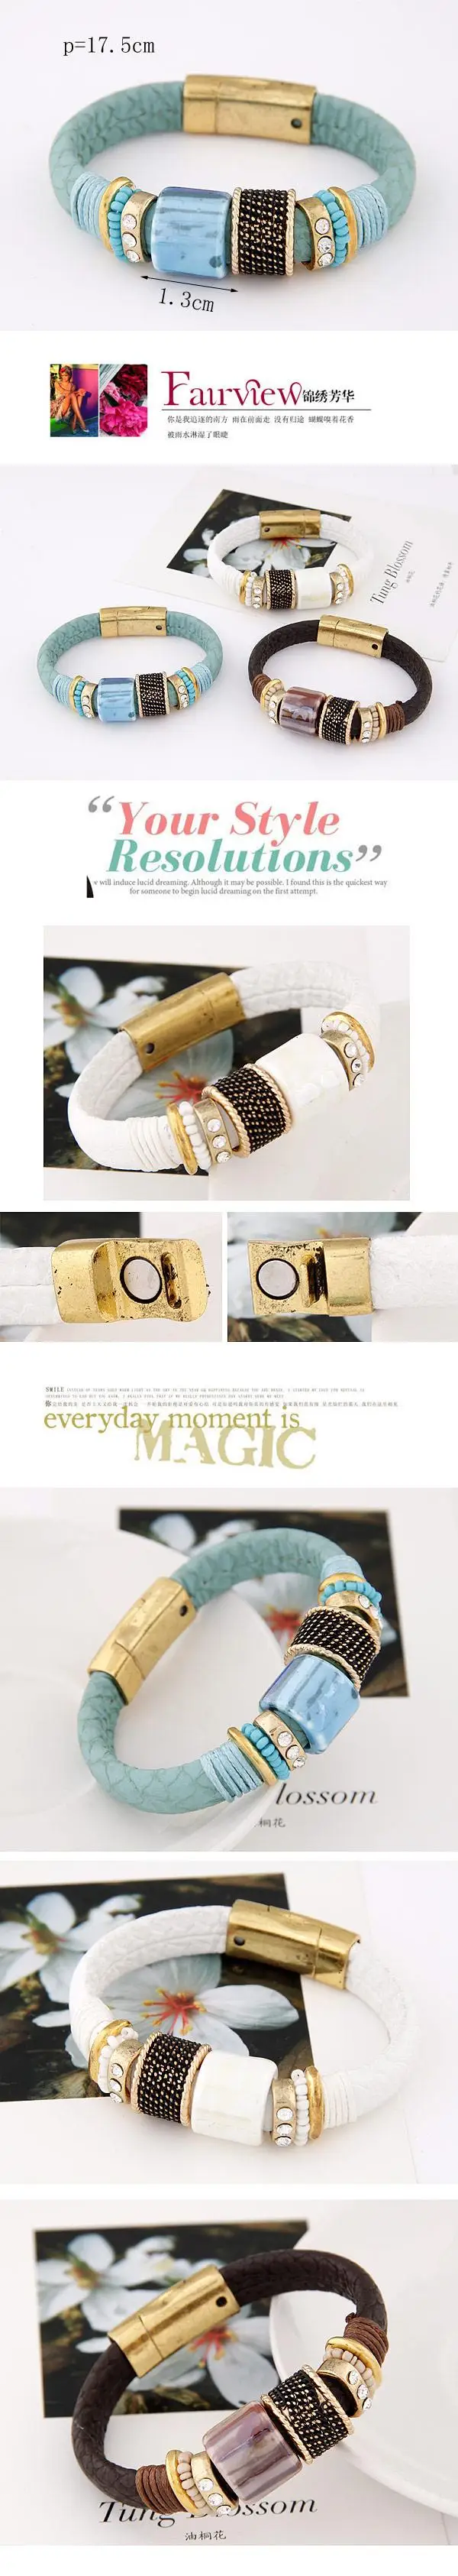 LEMOER Модный Магнитный кожаный браслет браслеты керамические бусины круг Pulseira женский браслет брендовые ювелирные изделия для женщин и мужчин